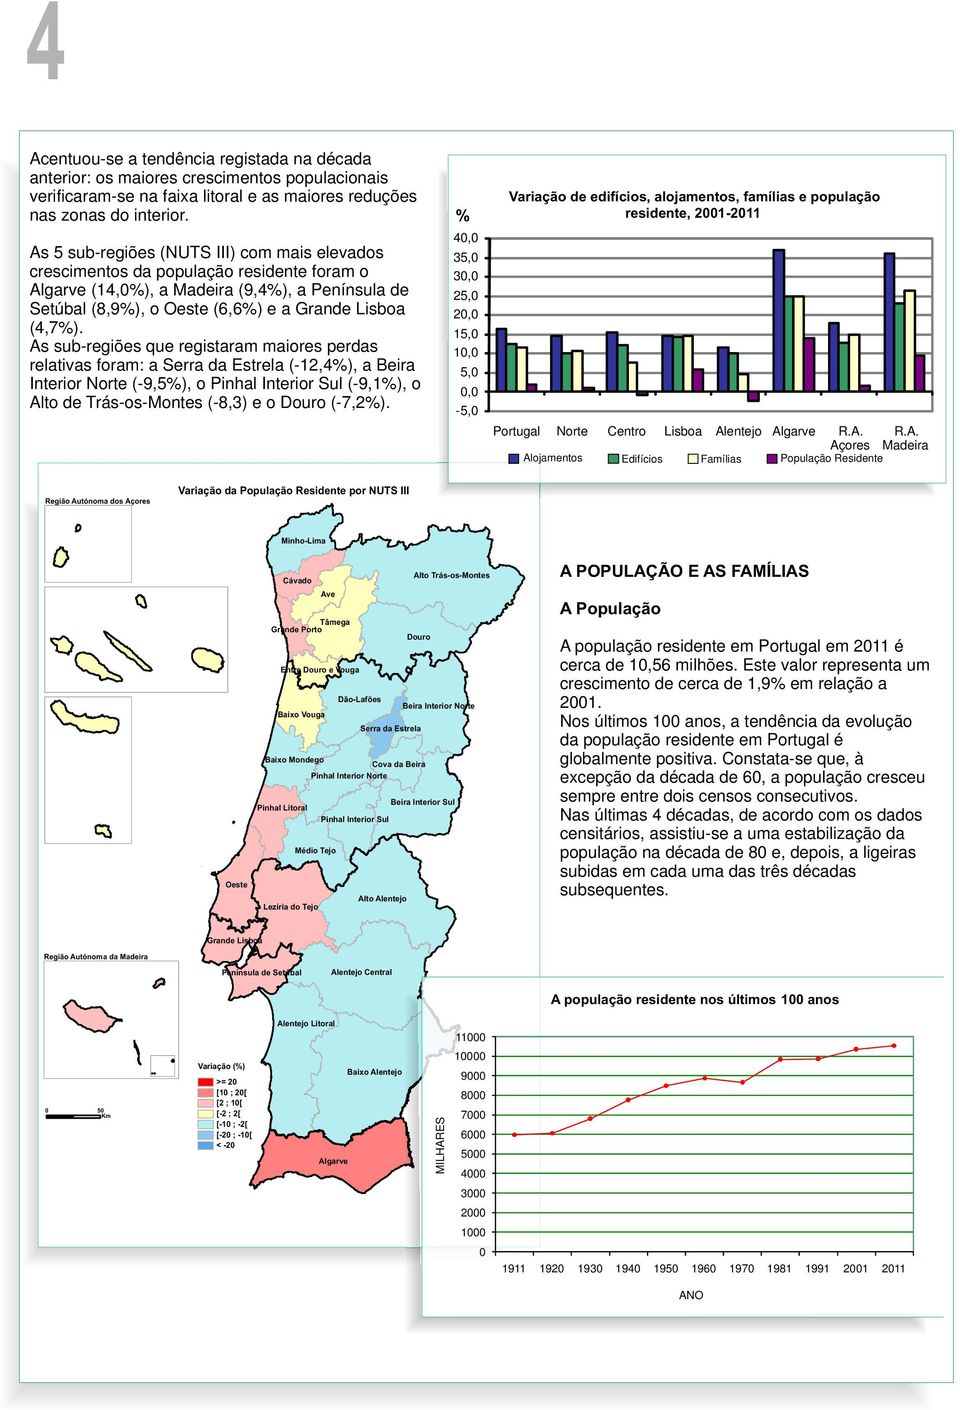 As sub-regiões que registaram maiores perdas relativas foram: a Serra da Estrela (-12,4), a Beira Interior Norte (-9,5), o Pinhal Interior Sul (-9,1), o Alto de Trás-os-Montes (-8,3) e o Douro (-7,2).